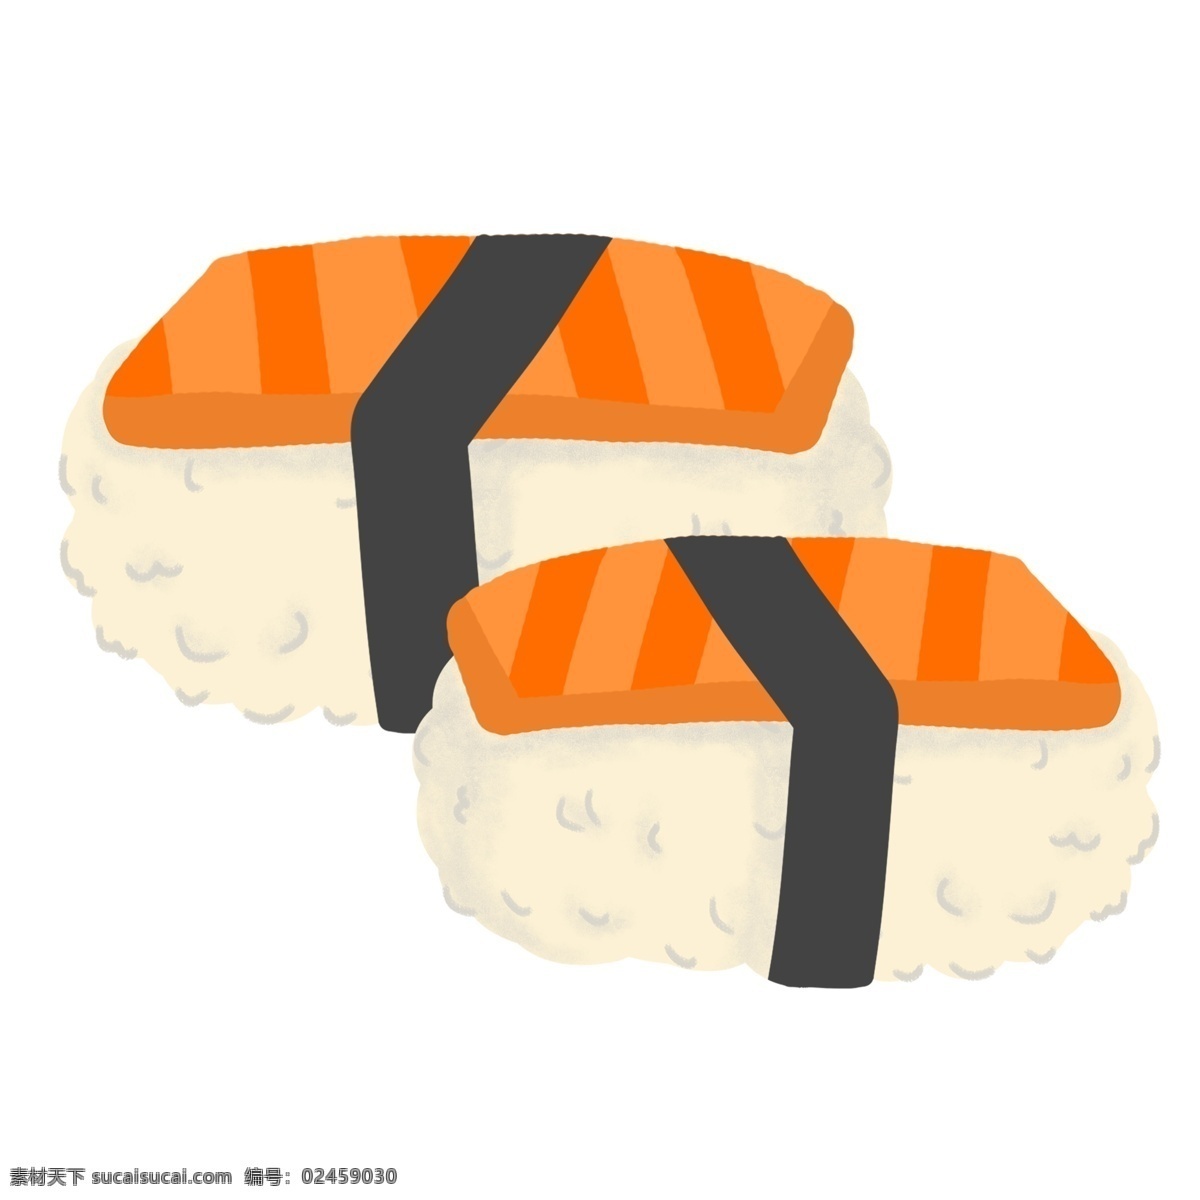 美味 日式 寿司 插画 美味的寿司 三文鱼寿司 日式美食 食物 卡通食物插画 创意寿司插画 食物插画